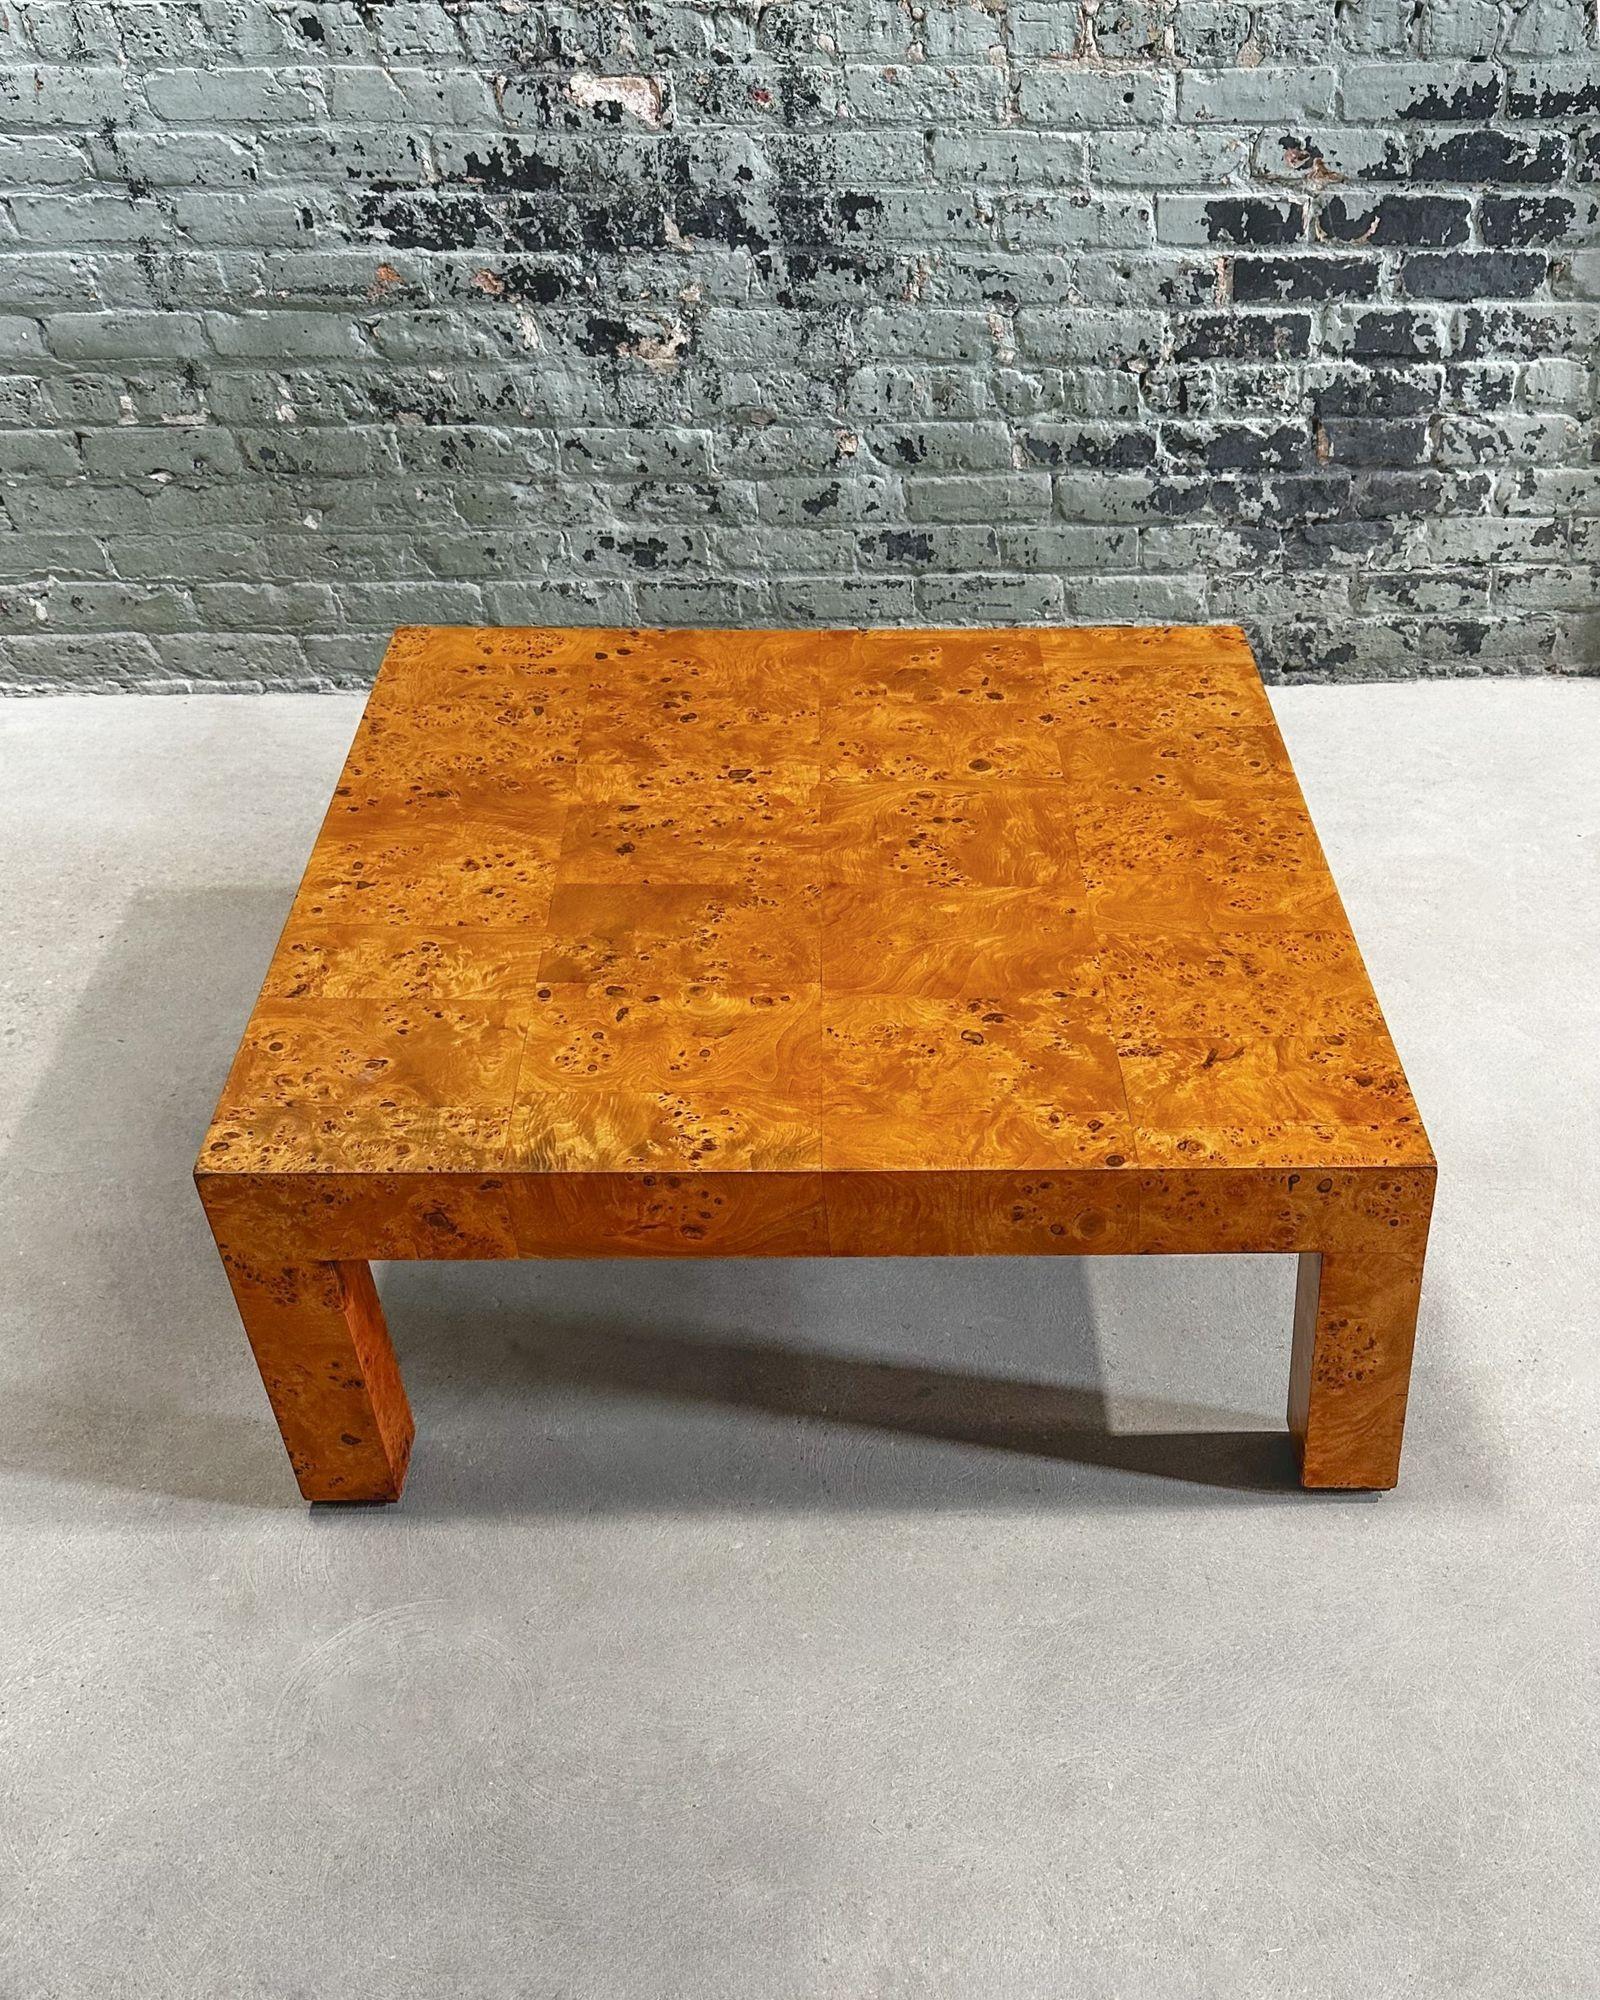 Table basse Parsons en bois de Milo Baughman, 1970. La table a été entièrement restaurée.
Mesure 39